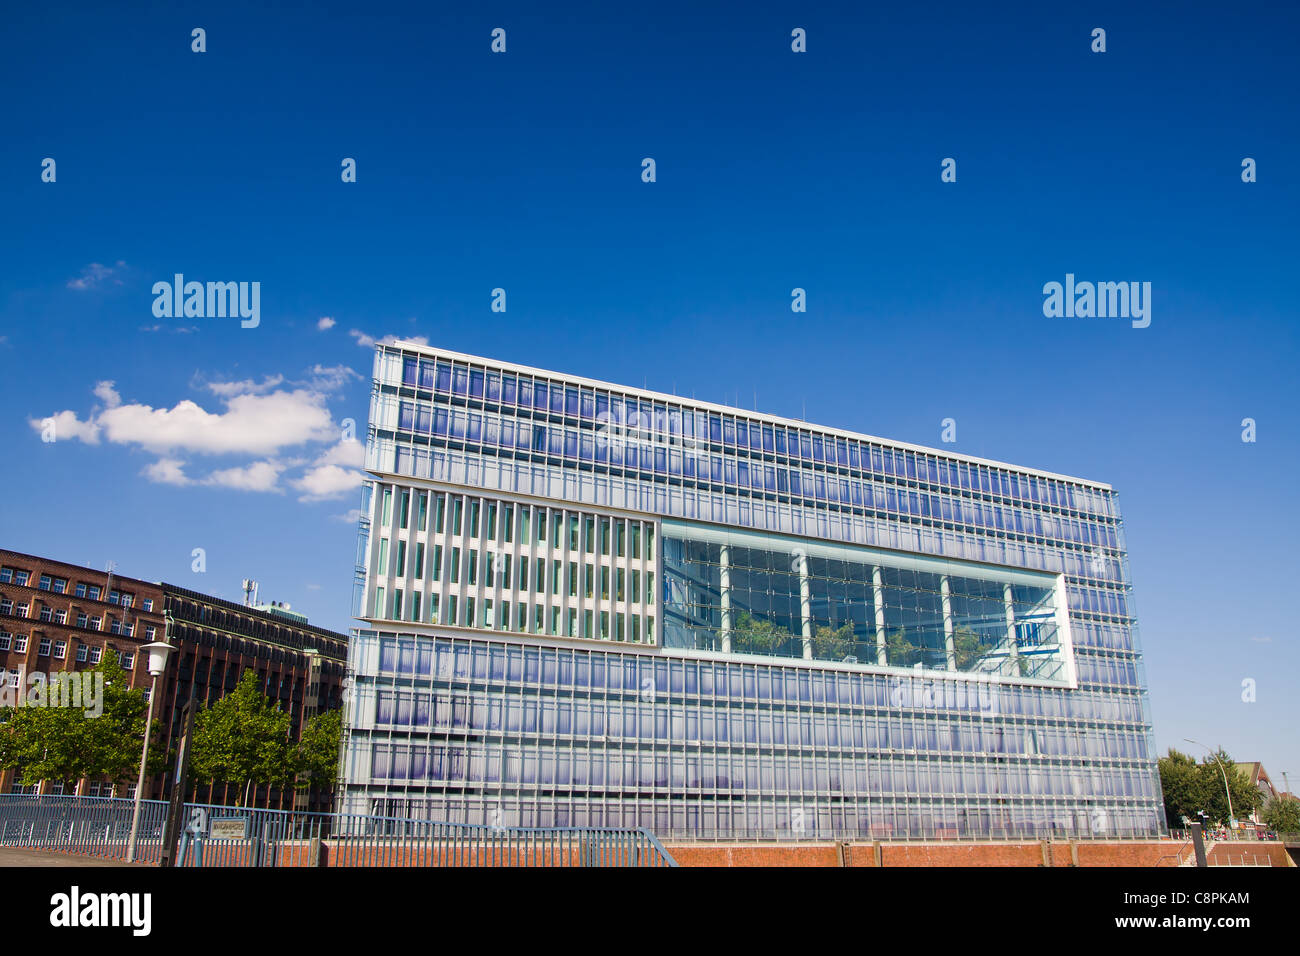 Vue de la ZDF moderne (télévision allemande) Bâtiment de la Deichtorcenter à Hambourg, Allemagne. Banque D'Images